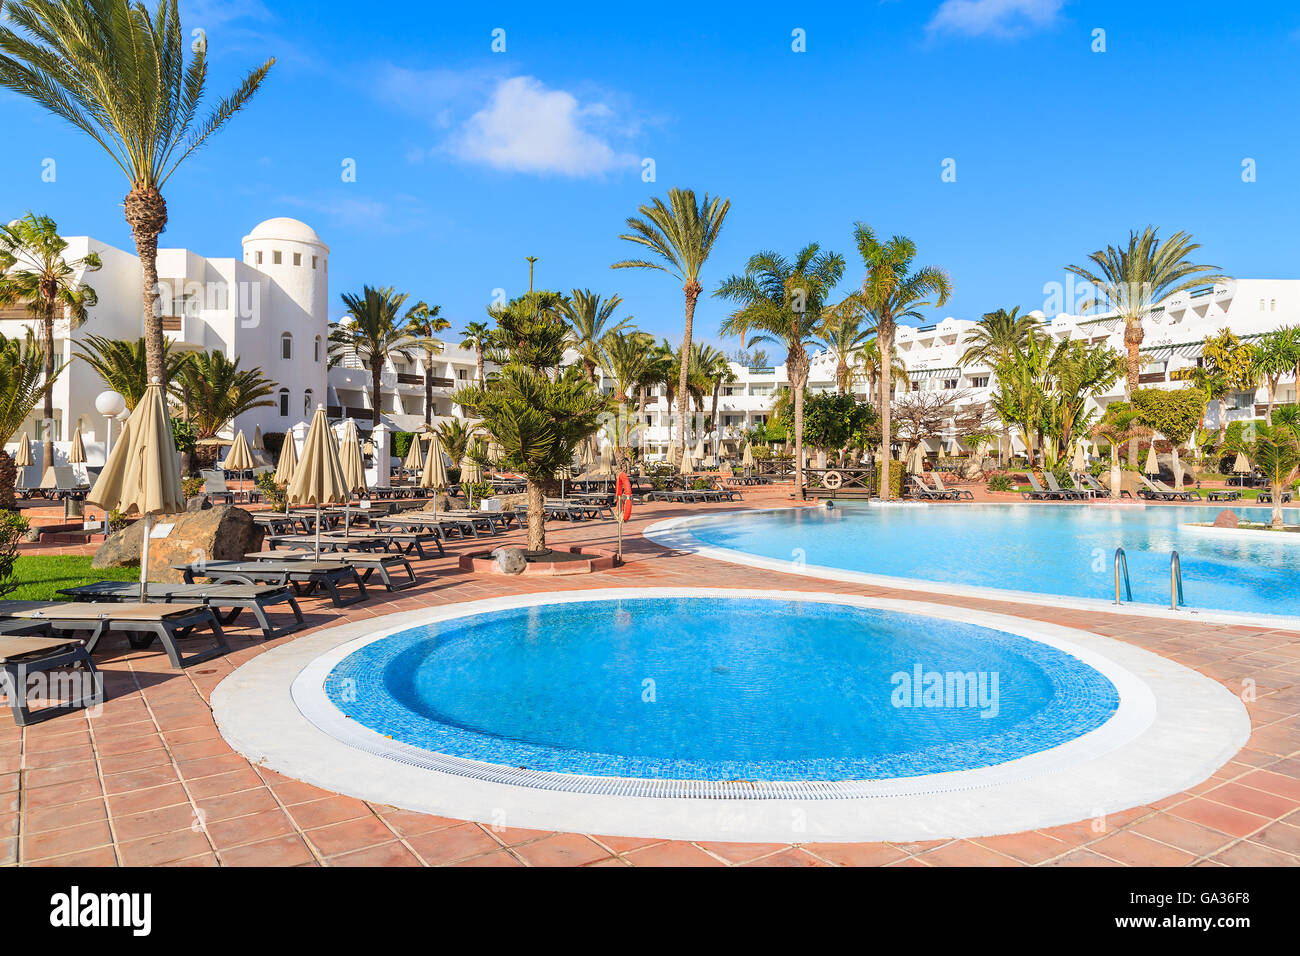 PLAYA BLANCA, LANZAROTE Insel - 16. Januar 2015: Schwimmbäder in tropischen Garten Luxus-Hotels. Kanarischen Inseln sind beliebtes Urlaubsziel für europäische Touristen in der Winterzeit. Stockfoto